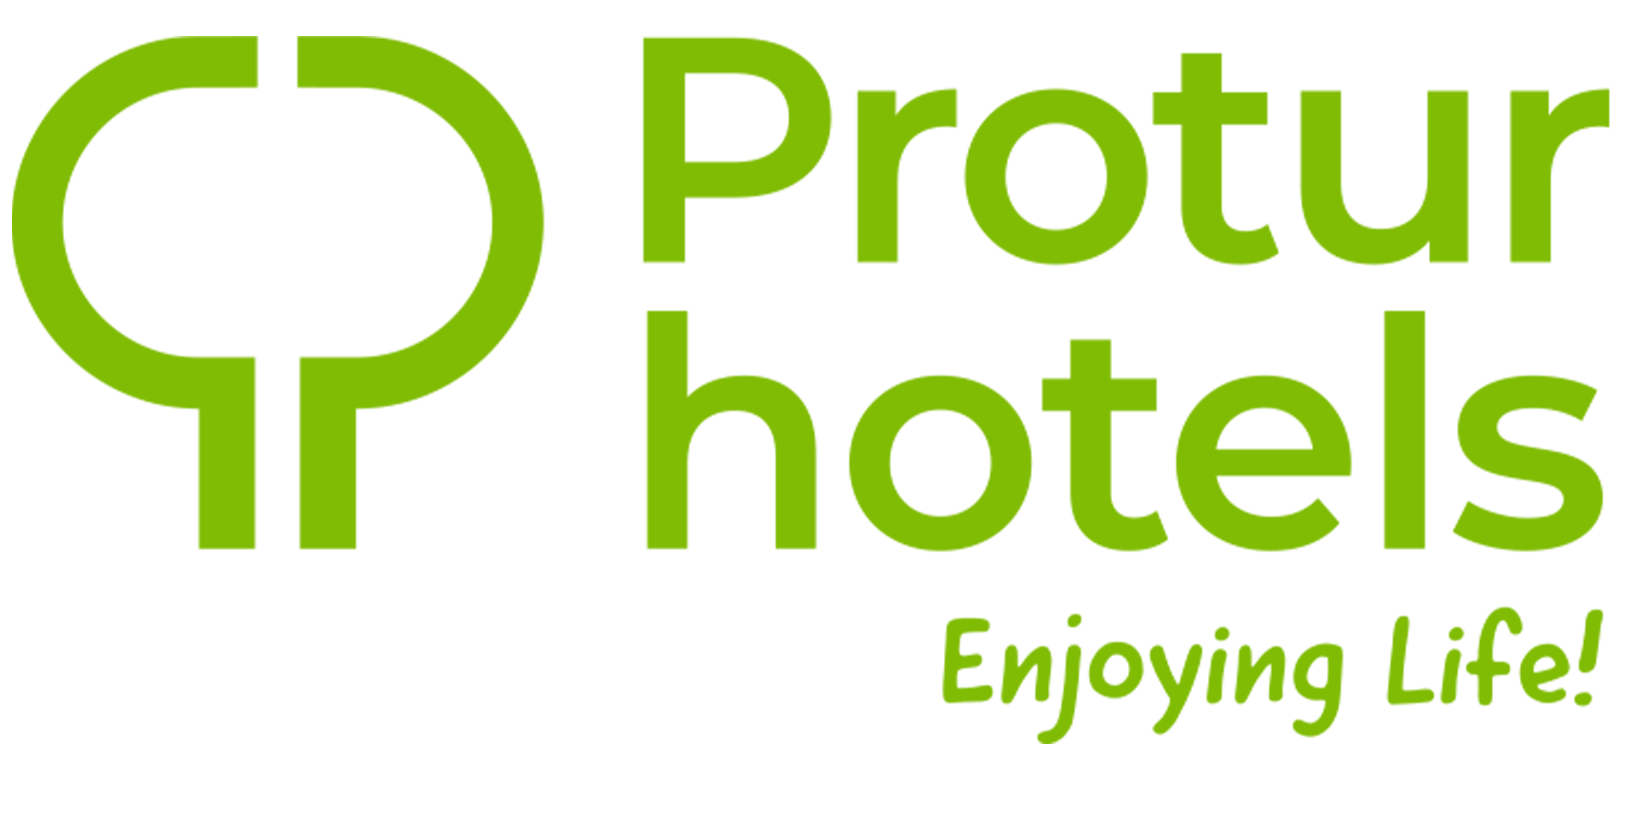 Protur Hotels | Hoteles y Aparthoteles en Mallorca y Almería